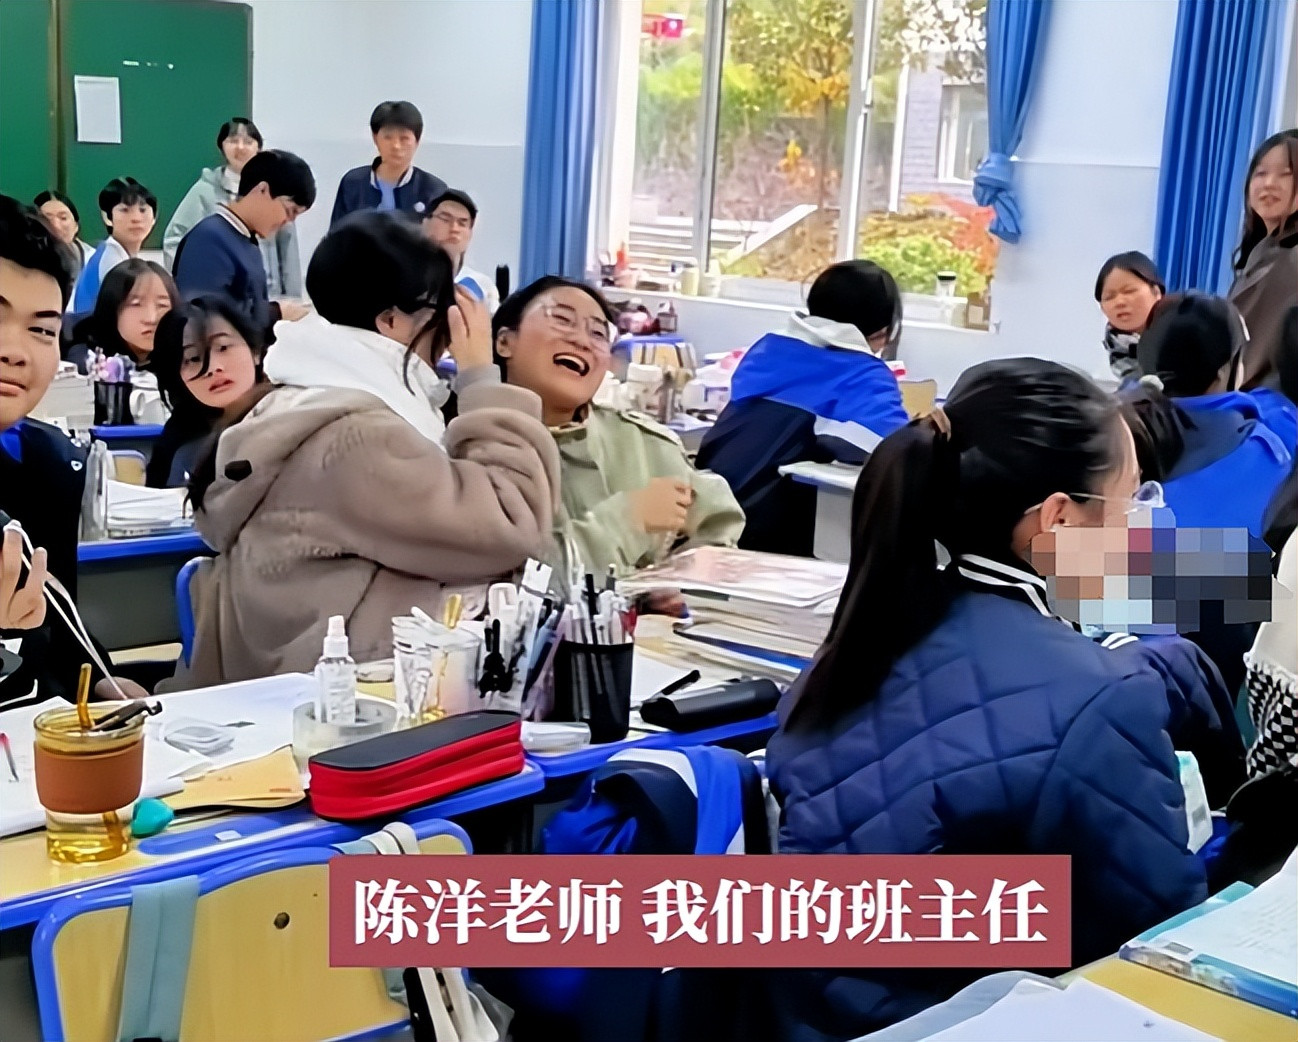 这个班主任叫陈洋, 自费给学生做挡风被, 有几个老师能做到?